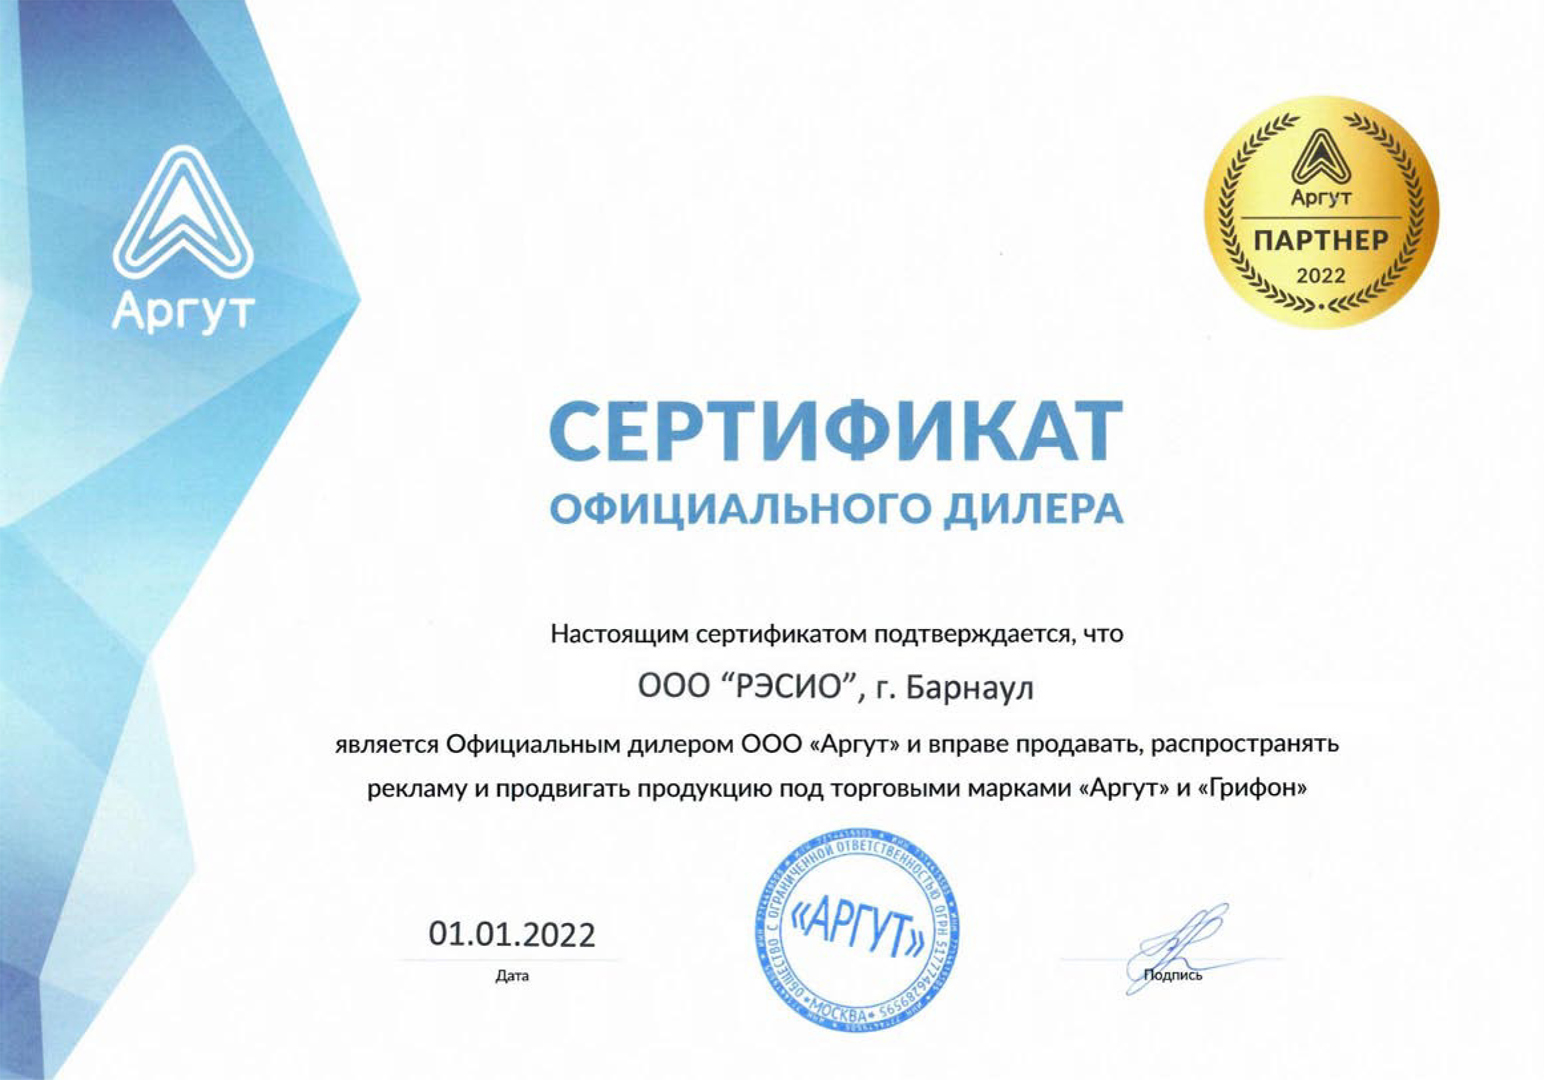 Сертификат официального дилера торговой марки "Аргут" и "Грифон" (РЭСИО)